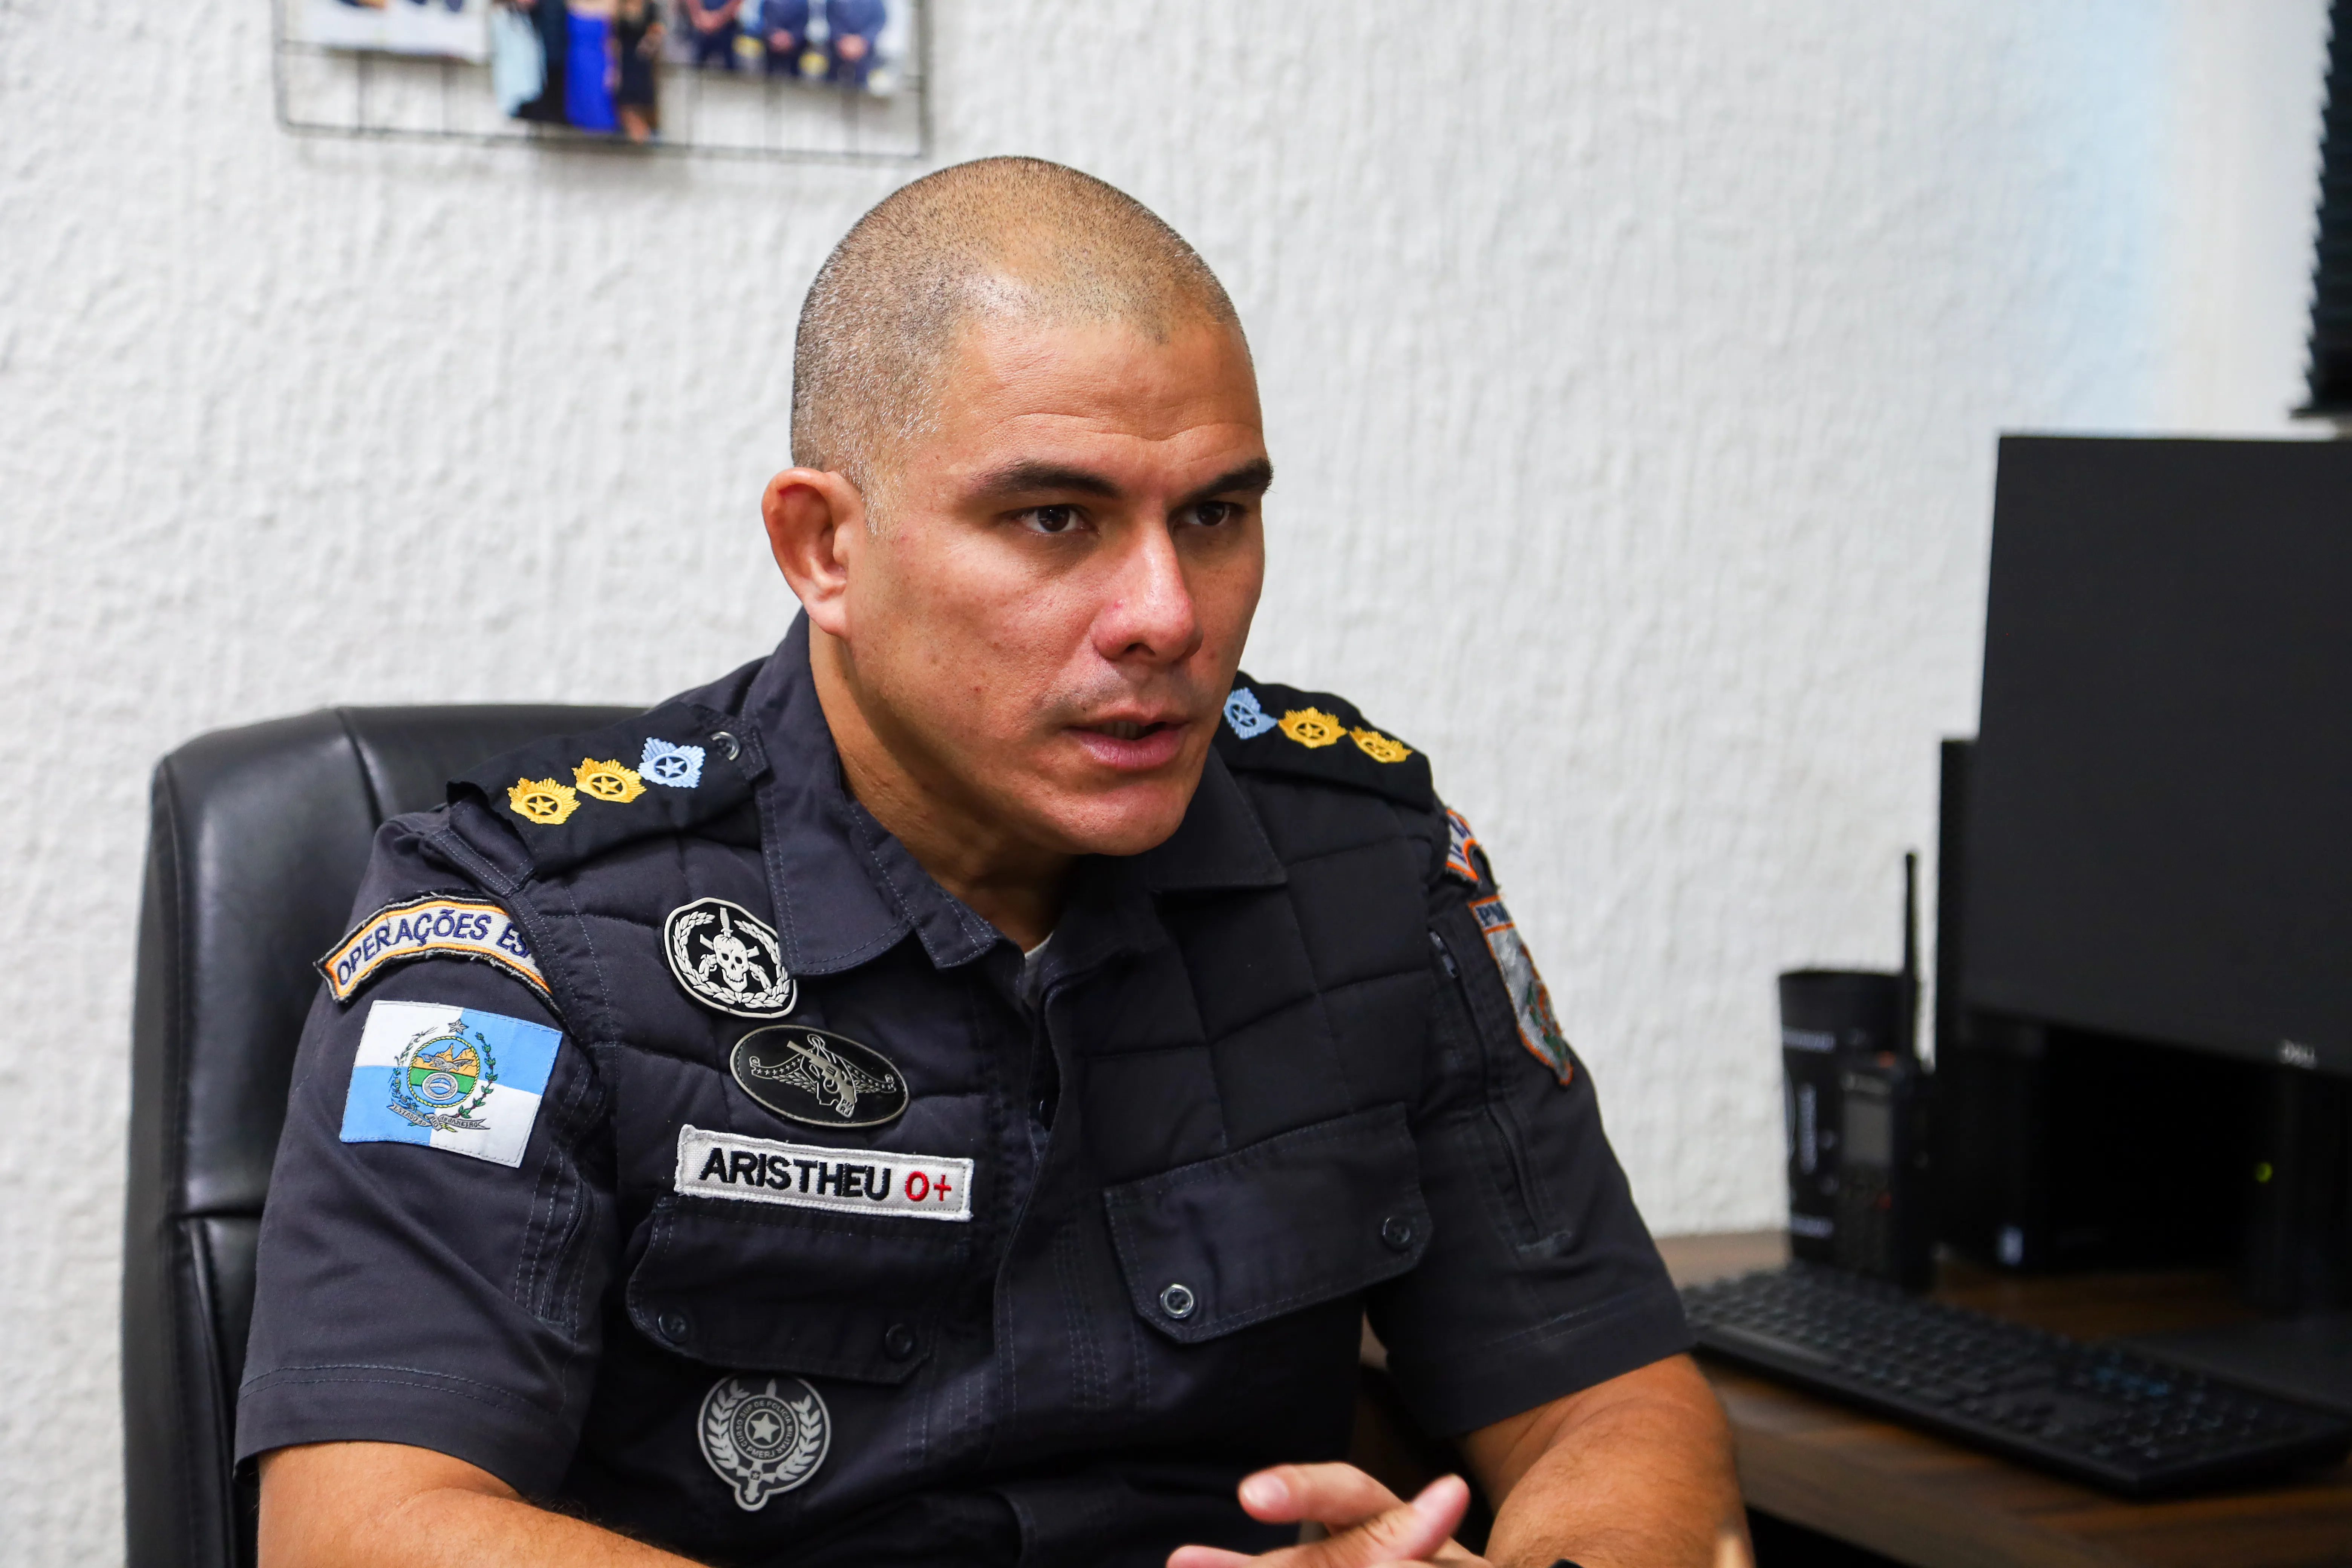 Comandante do 12º BPM (Niterói), tenente-coronel Aristheu de Góes, atrela recorrência de furtos às penas brandas